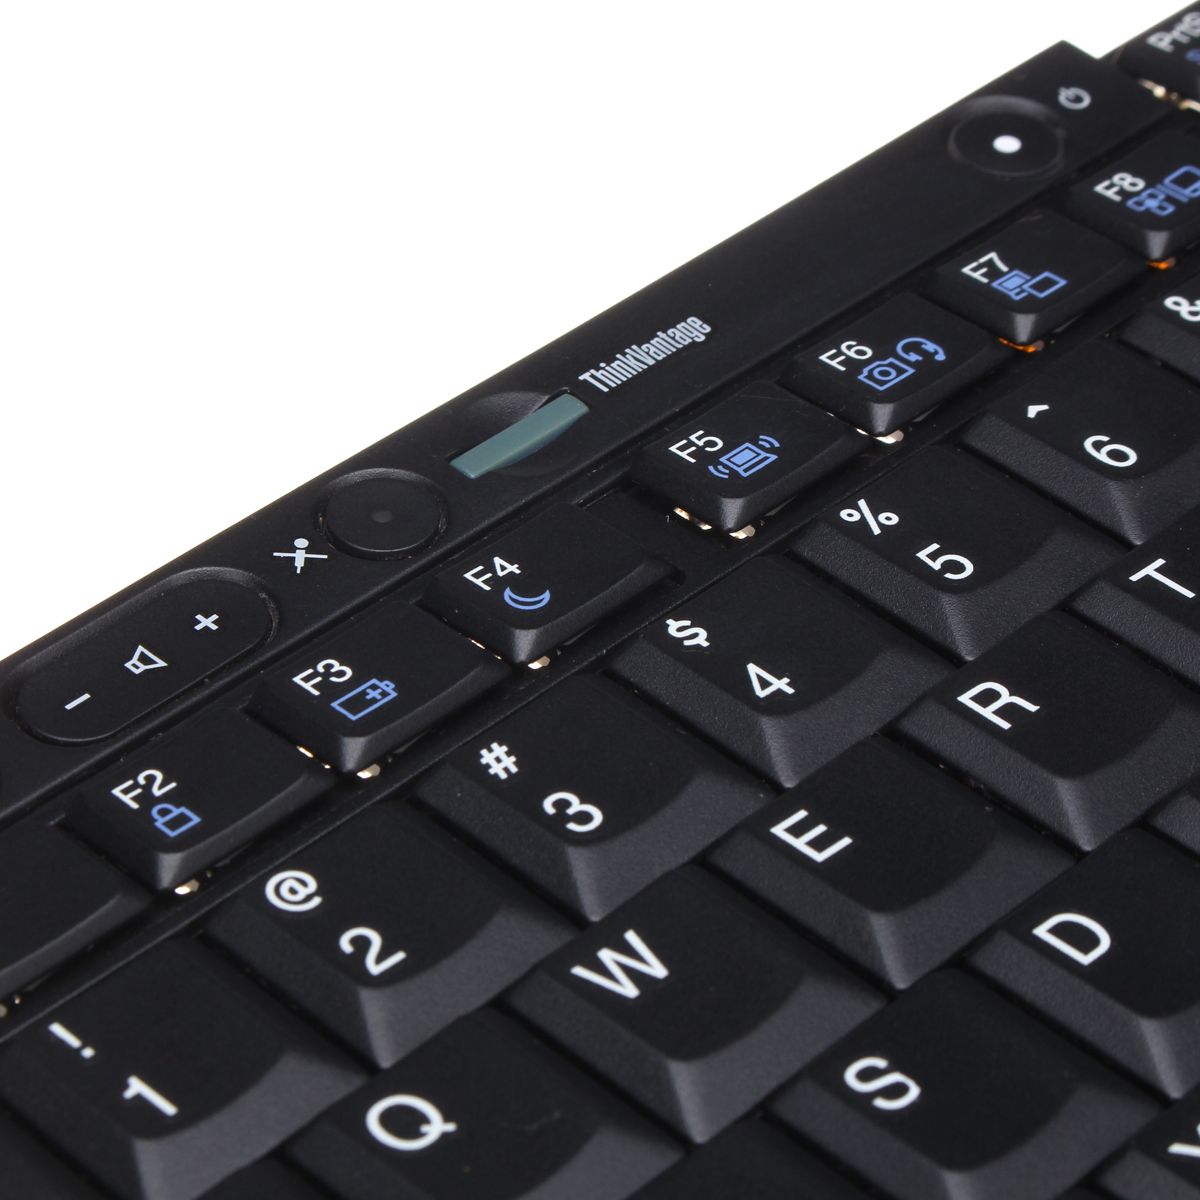 Keyboard-for-ThinkPad-US-Layout-T410-T420-T510-T520-W510-W520-X220-Universal-Plastic-Keyboard-1709703